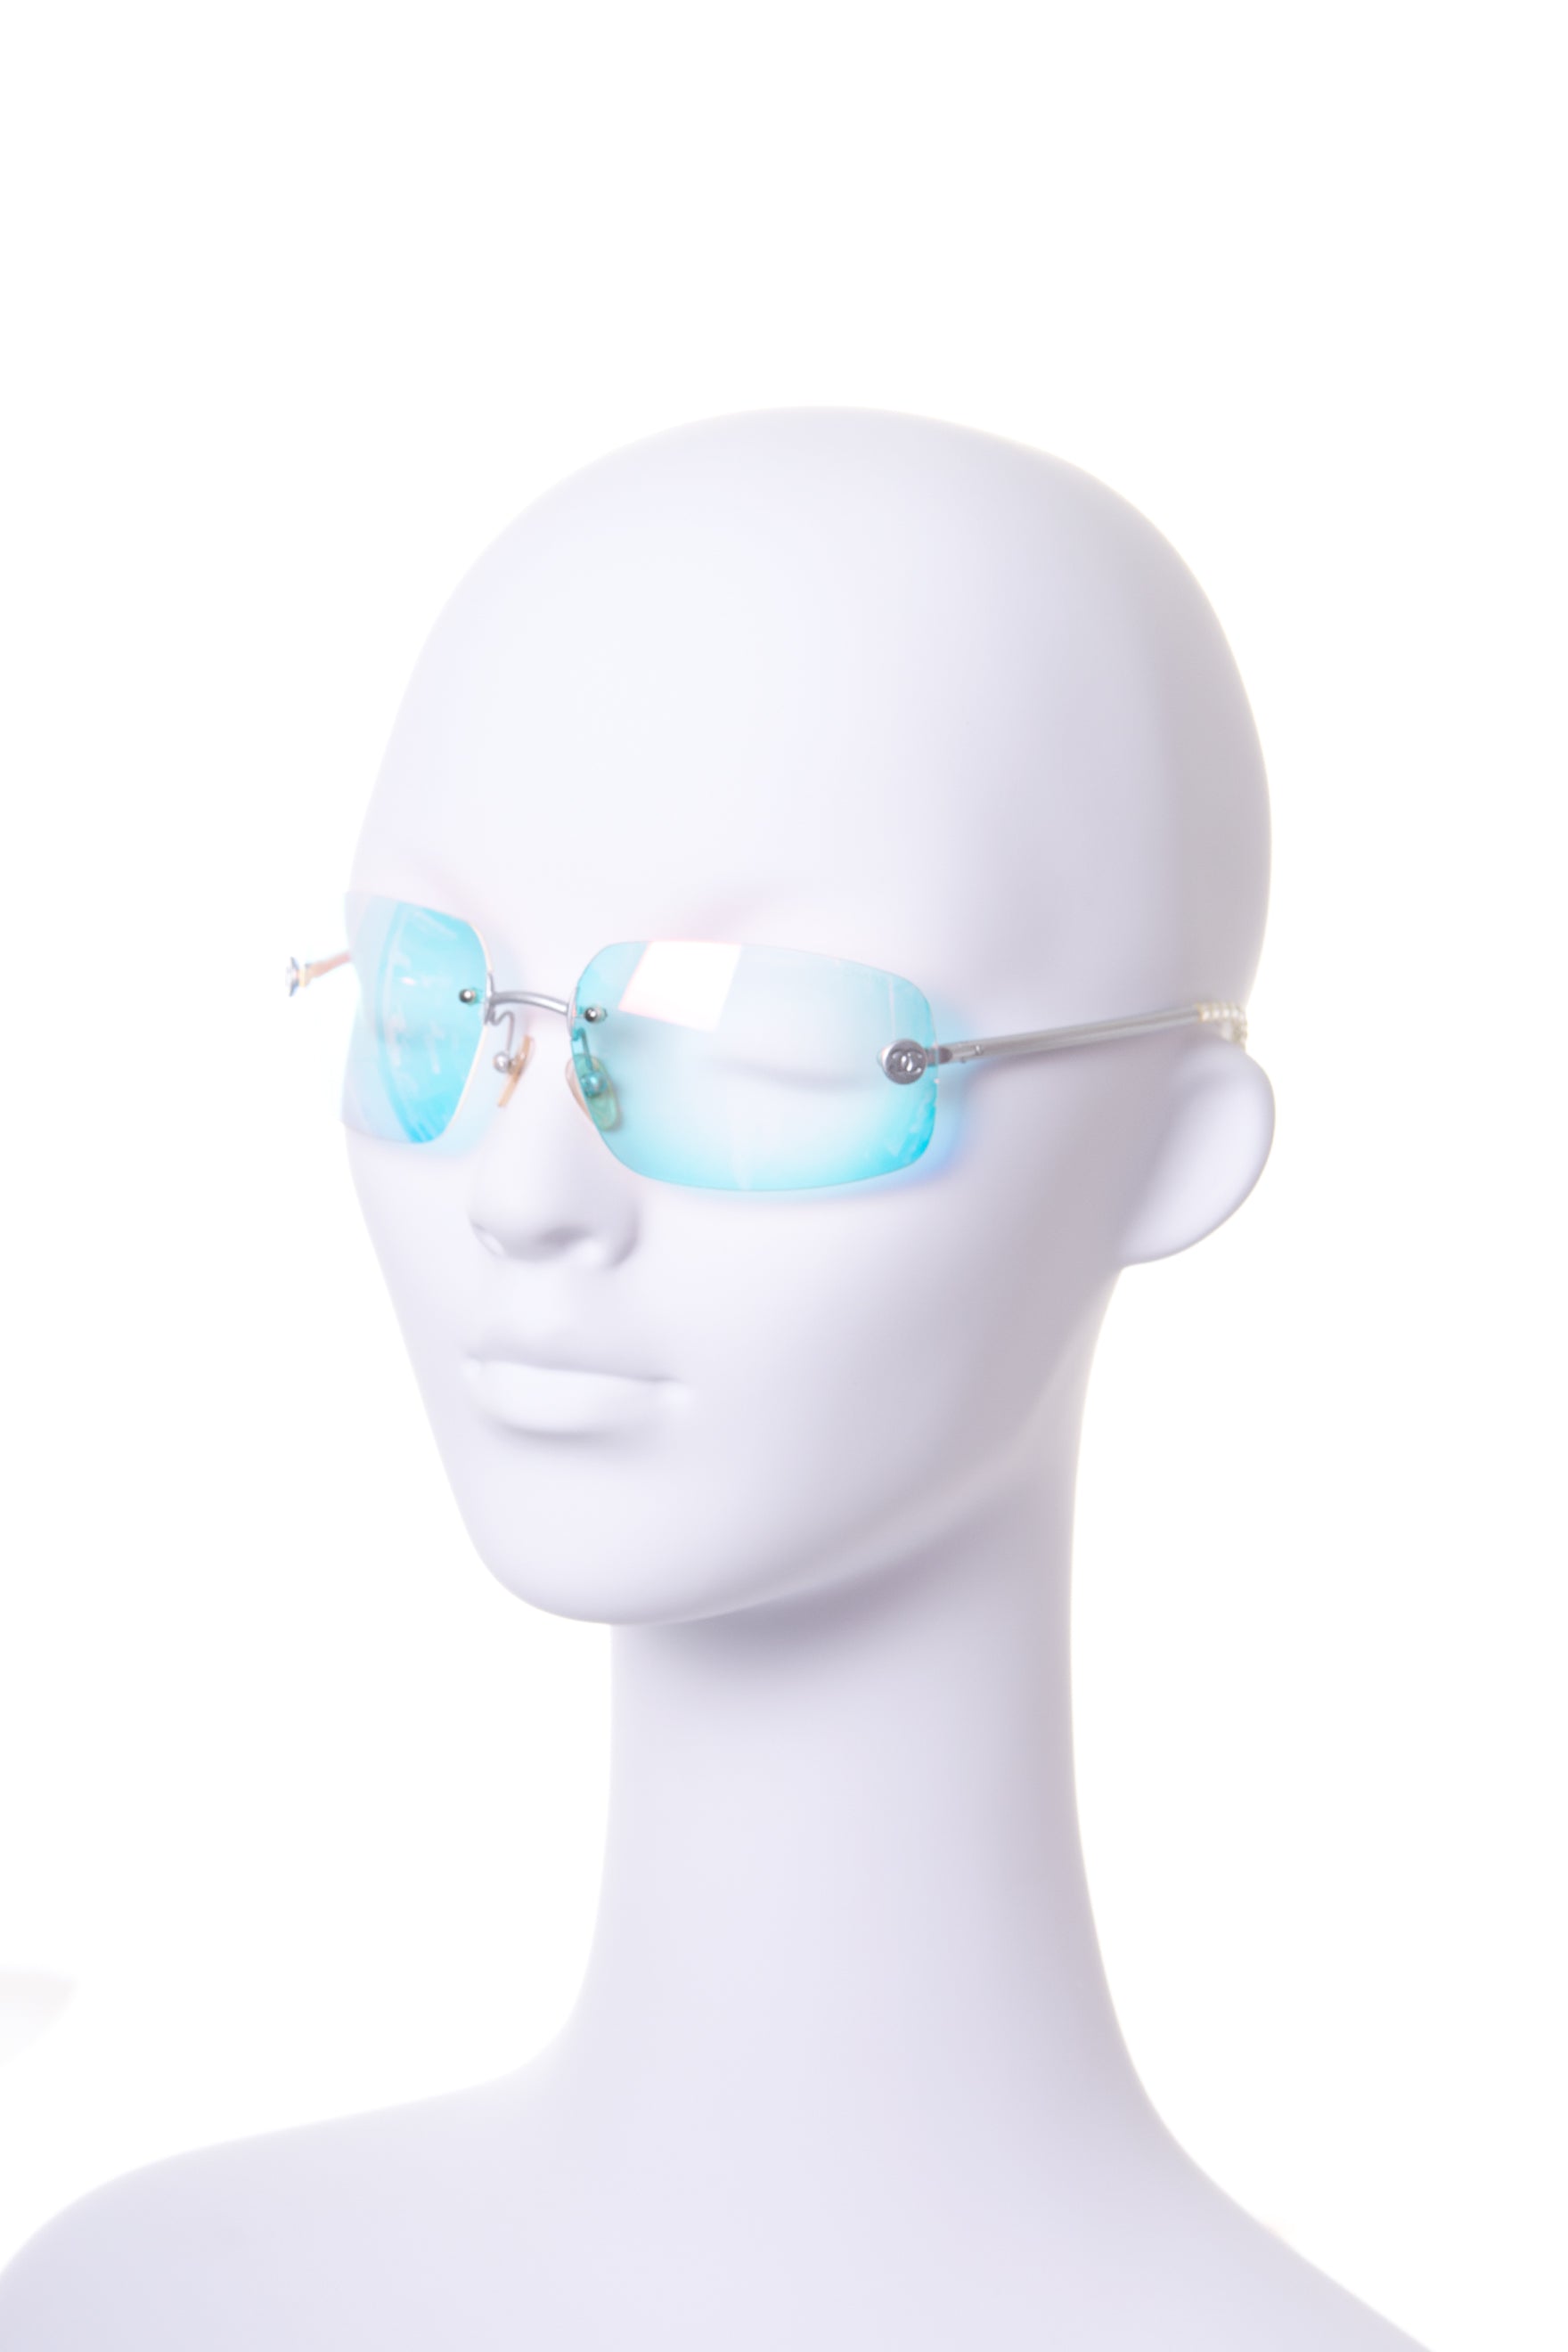 CHANEL 3308 Blue Women's Optical Eyeglasses Frames 50mm 18mm